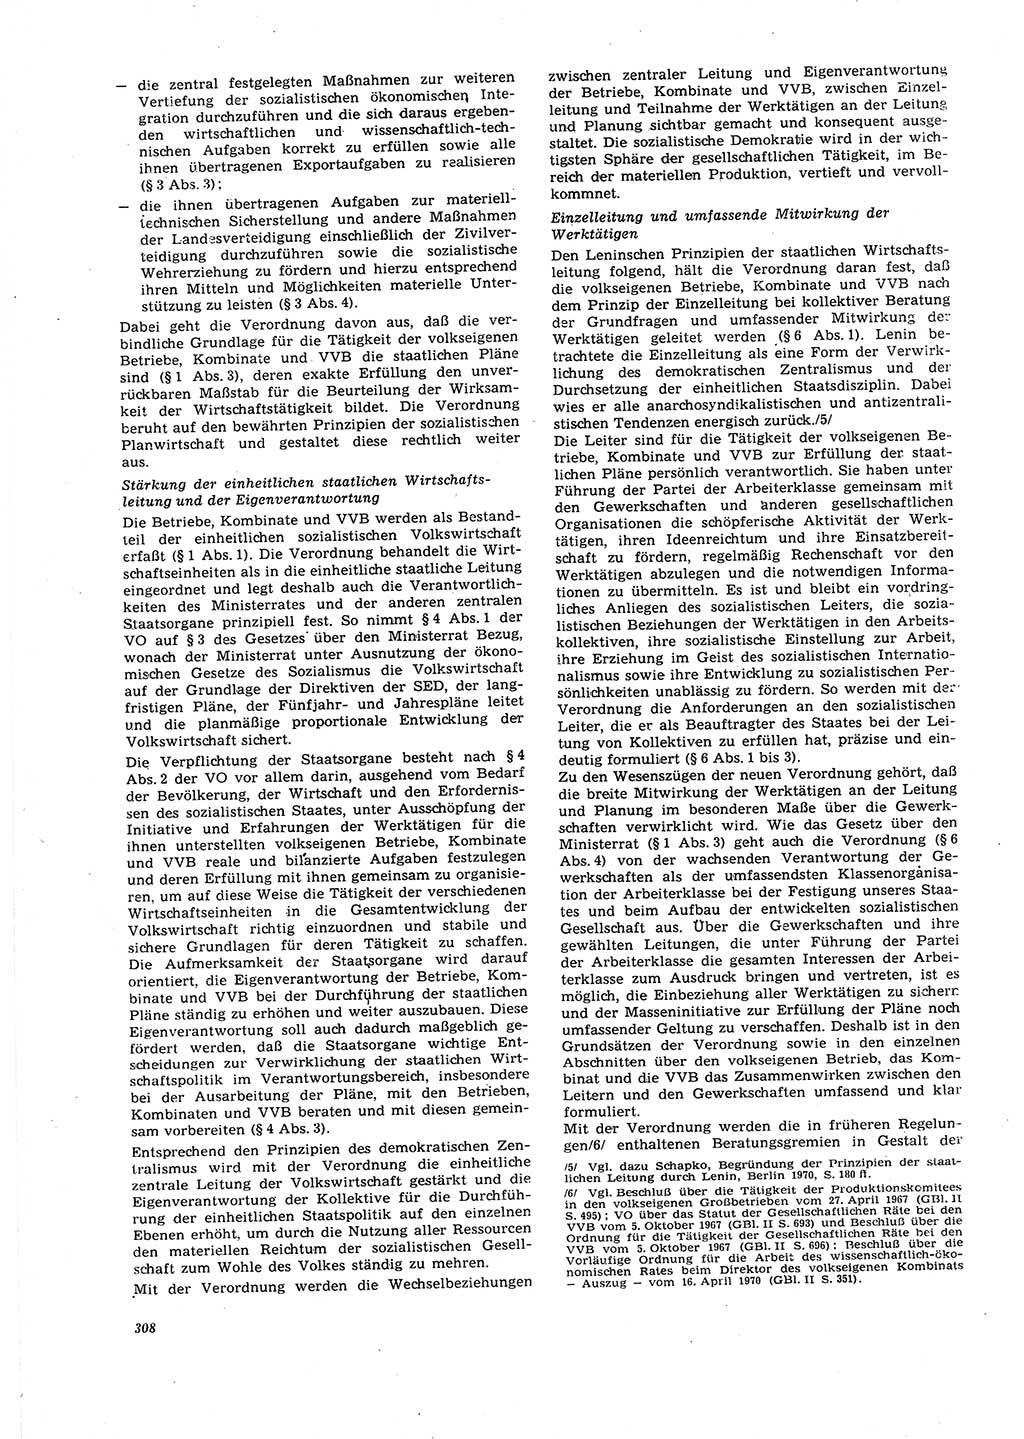 Neue Justiz (NJ), Zeitschrift für Recht und Rechtswissenschaft [Deutsche Demokratische Republik (DDR)], 27. Jahrgang 1973, Seite 308 (NJ DDR 1973, S. 308)